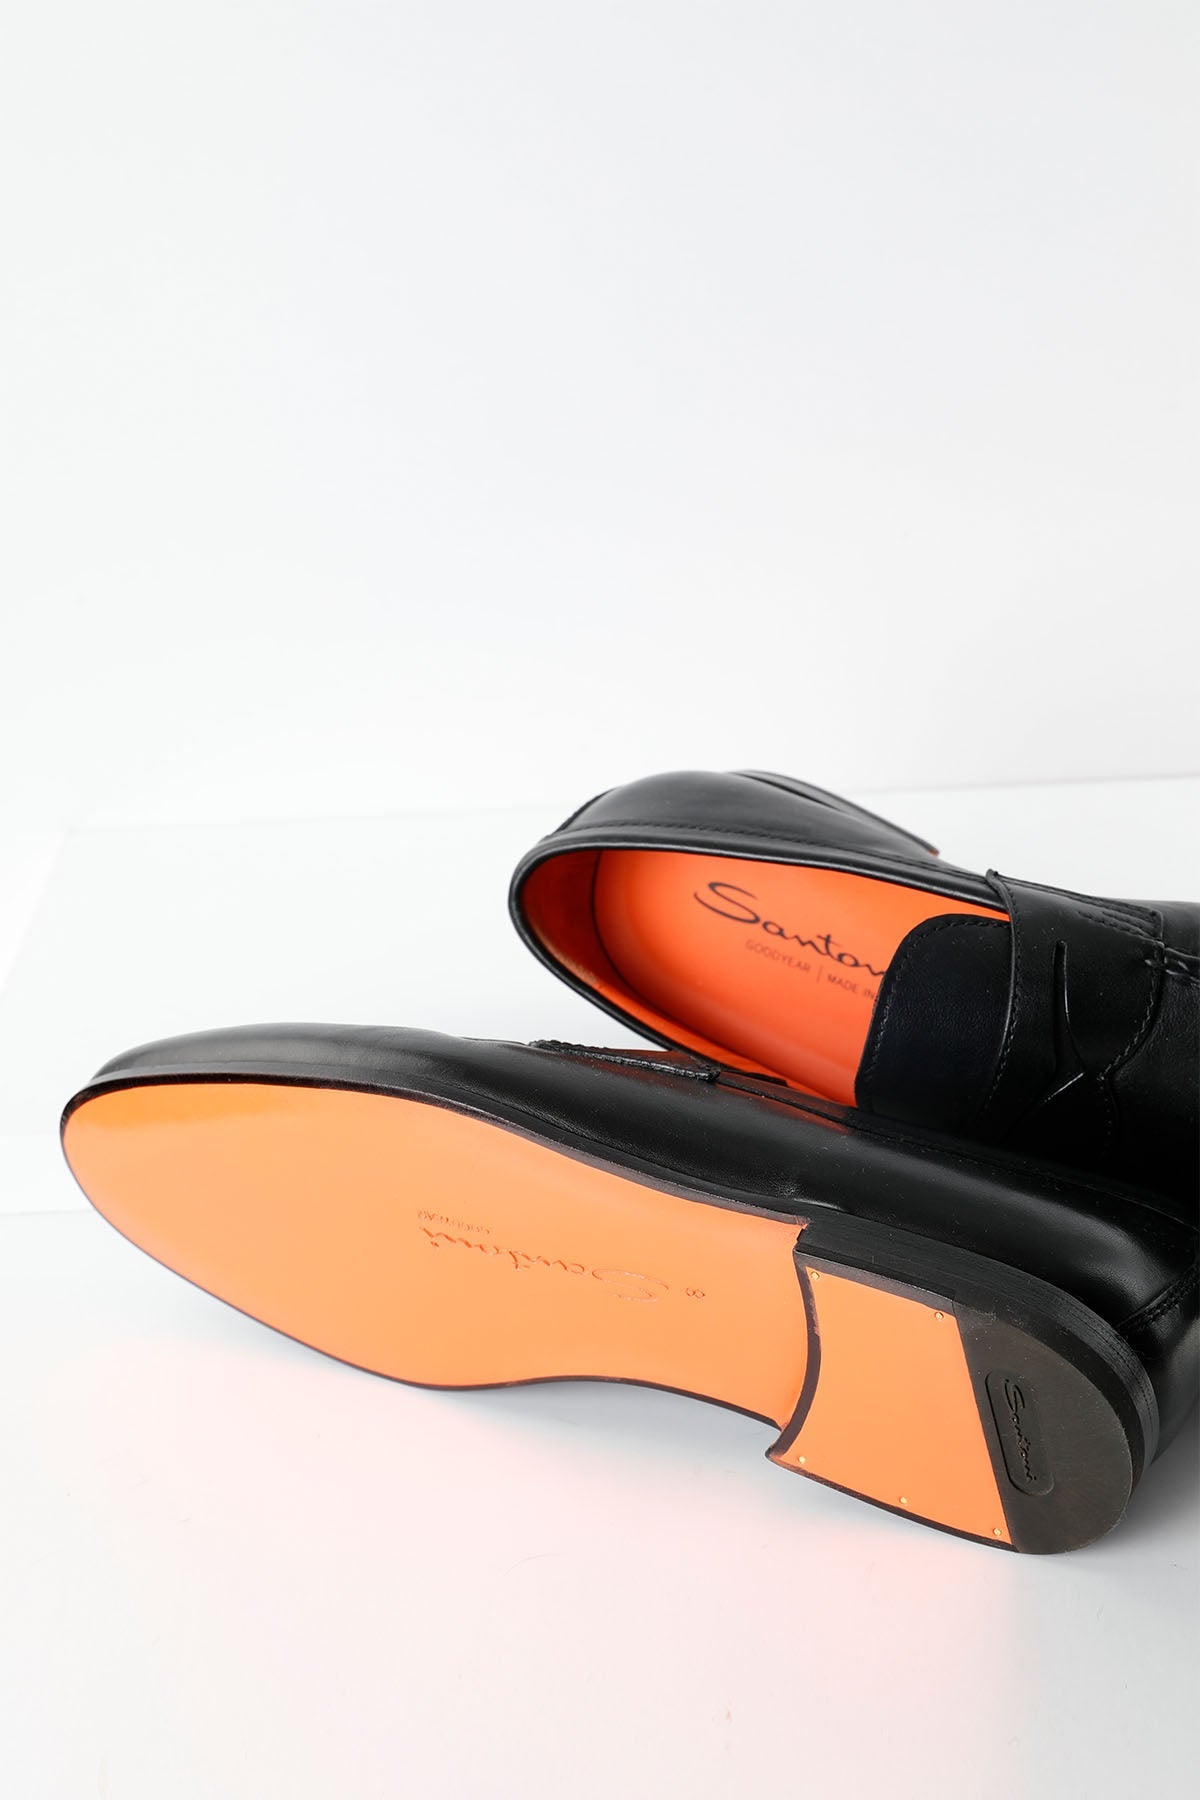 Santoni Goodyear Taban Deri Loafer Ayakkabı